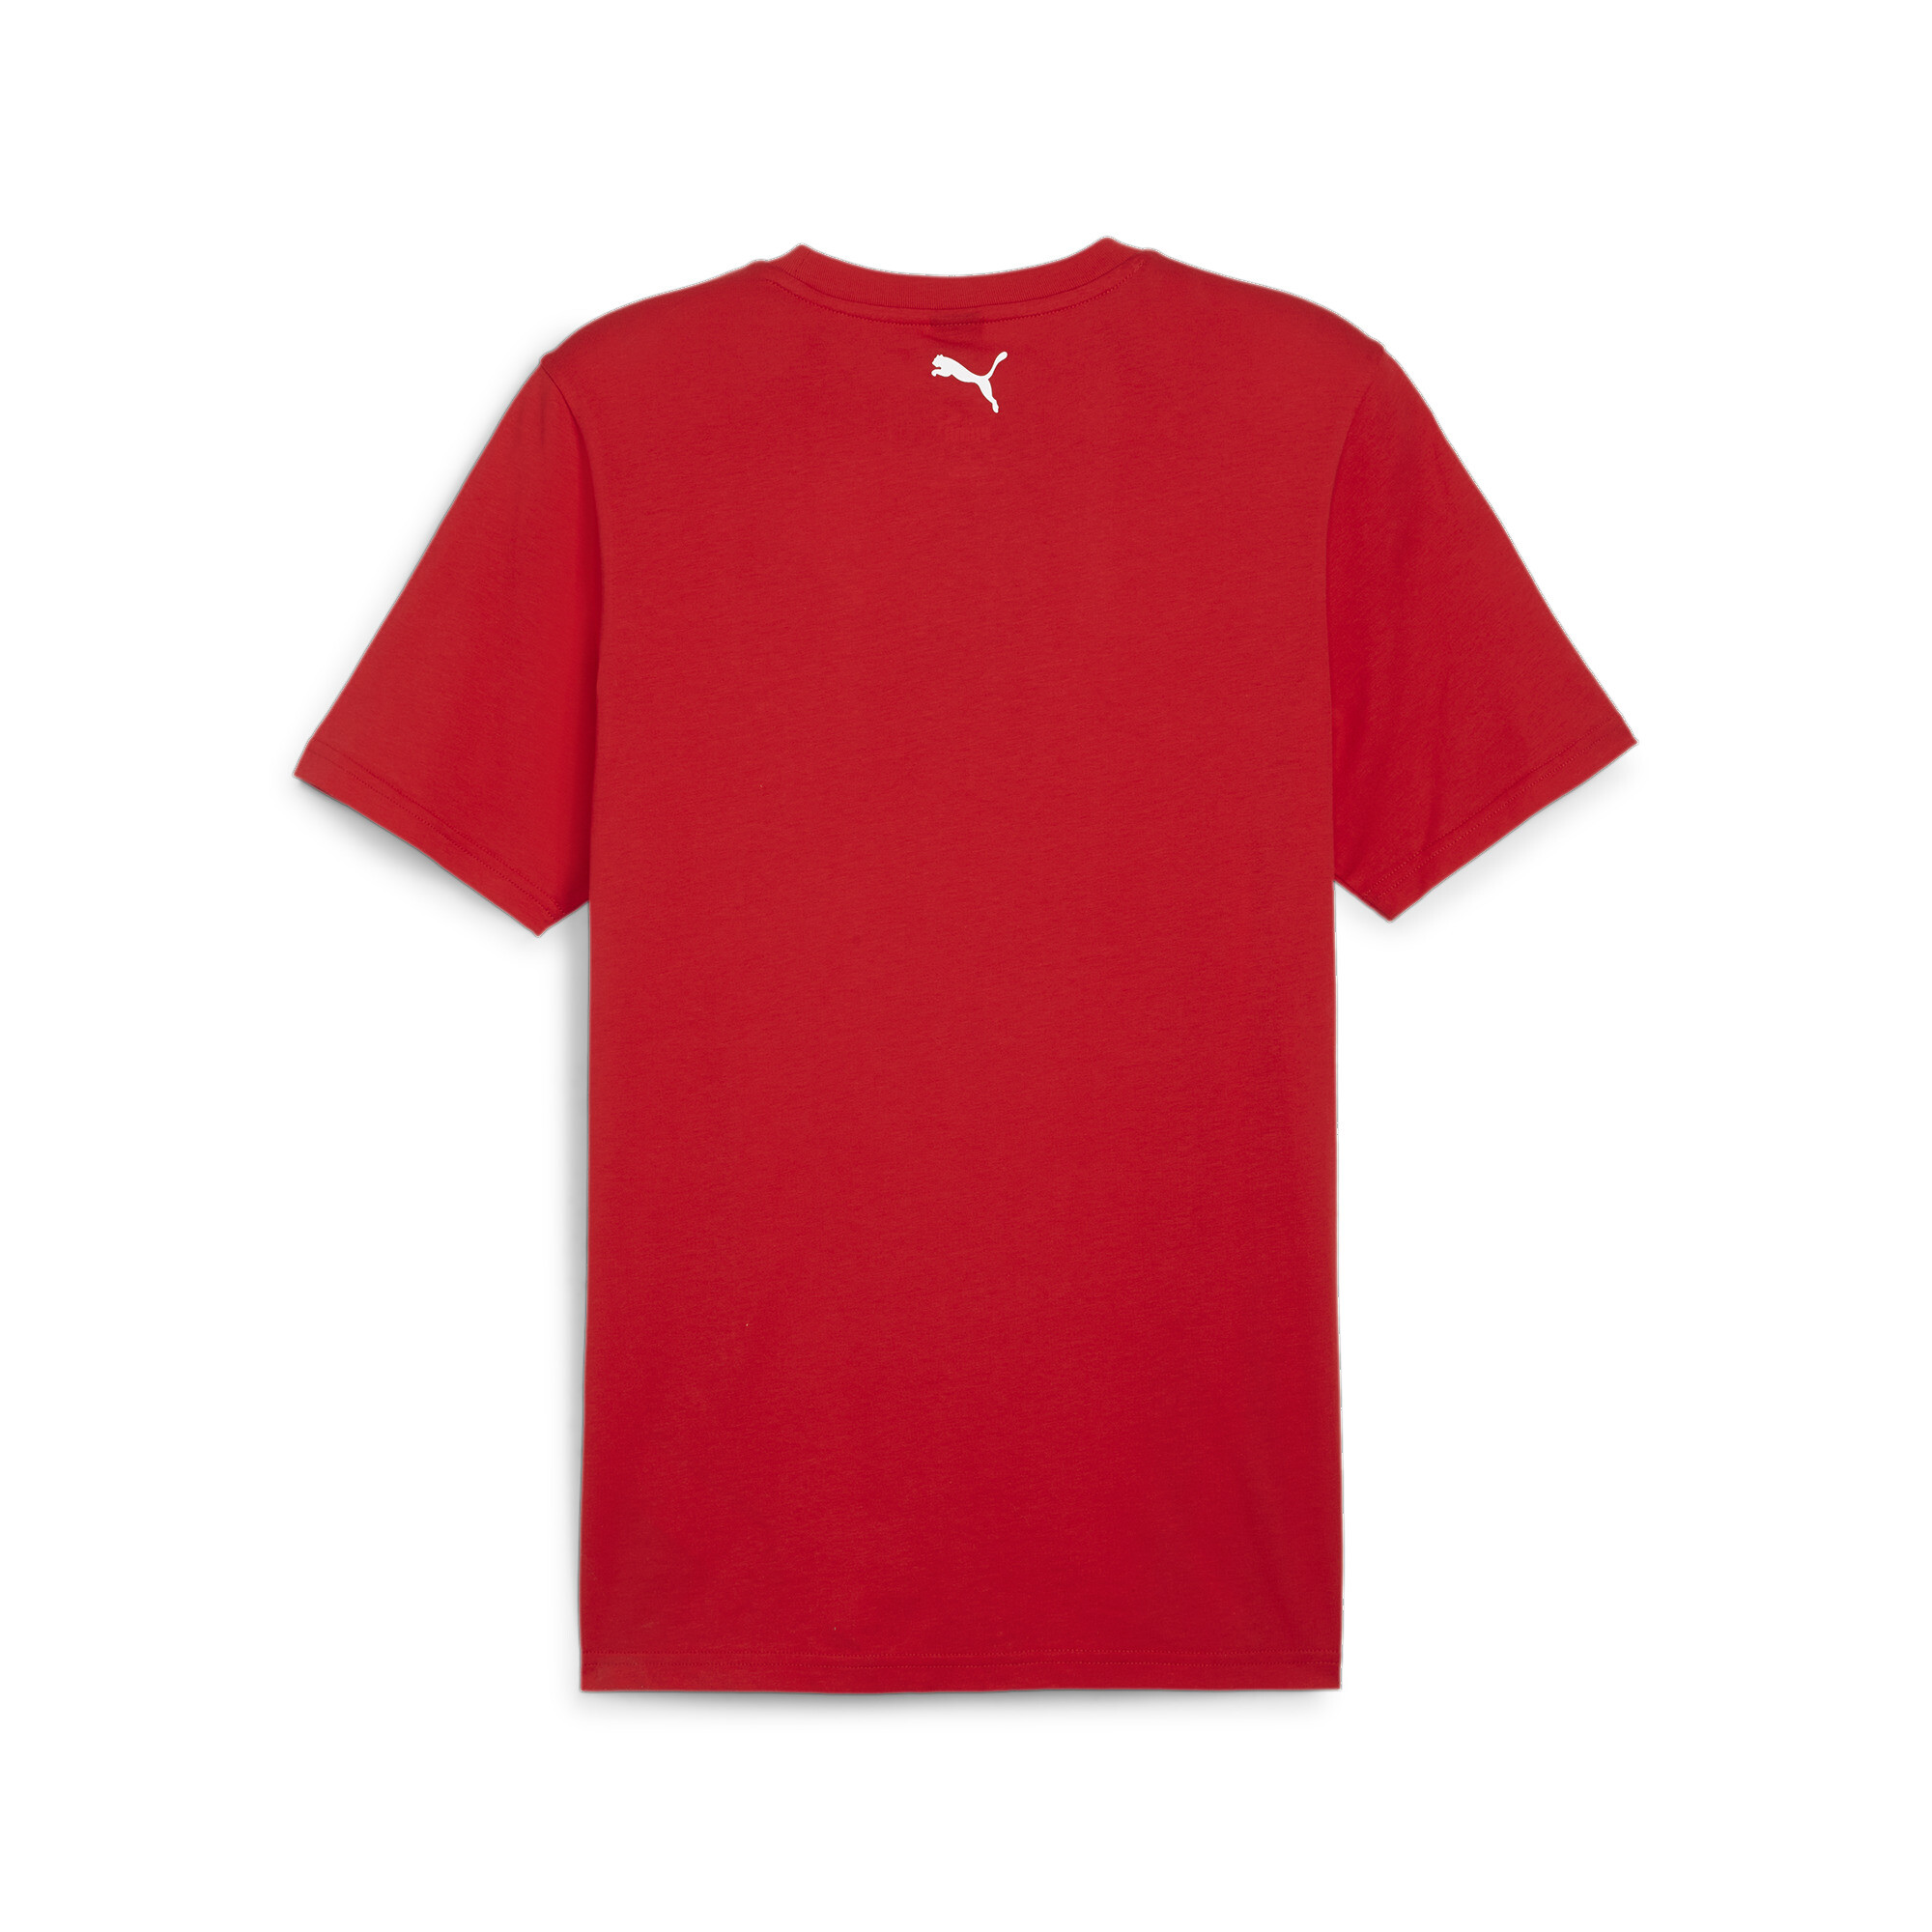 Men's PUMA Scuderia Ferrari Race T-Shirt In Red, Size Large